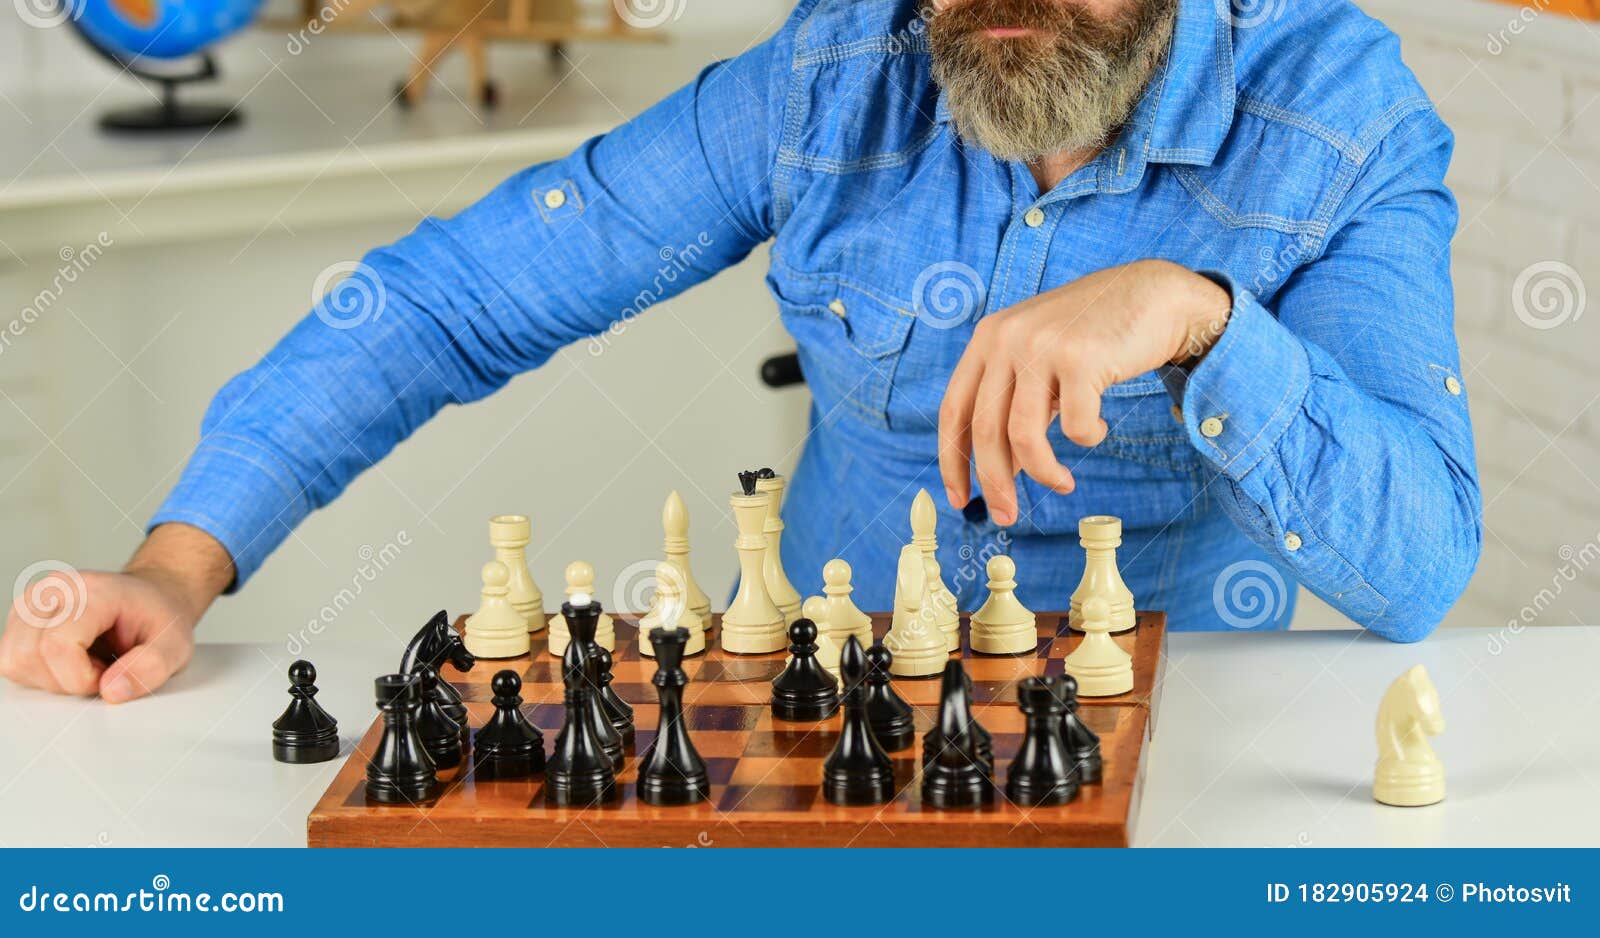 Pessoa jogando jogo de tabuleiro de xadrez, imagem de conceito de